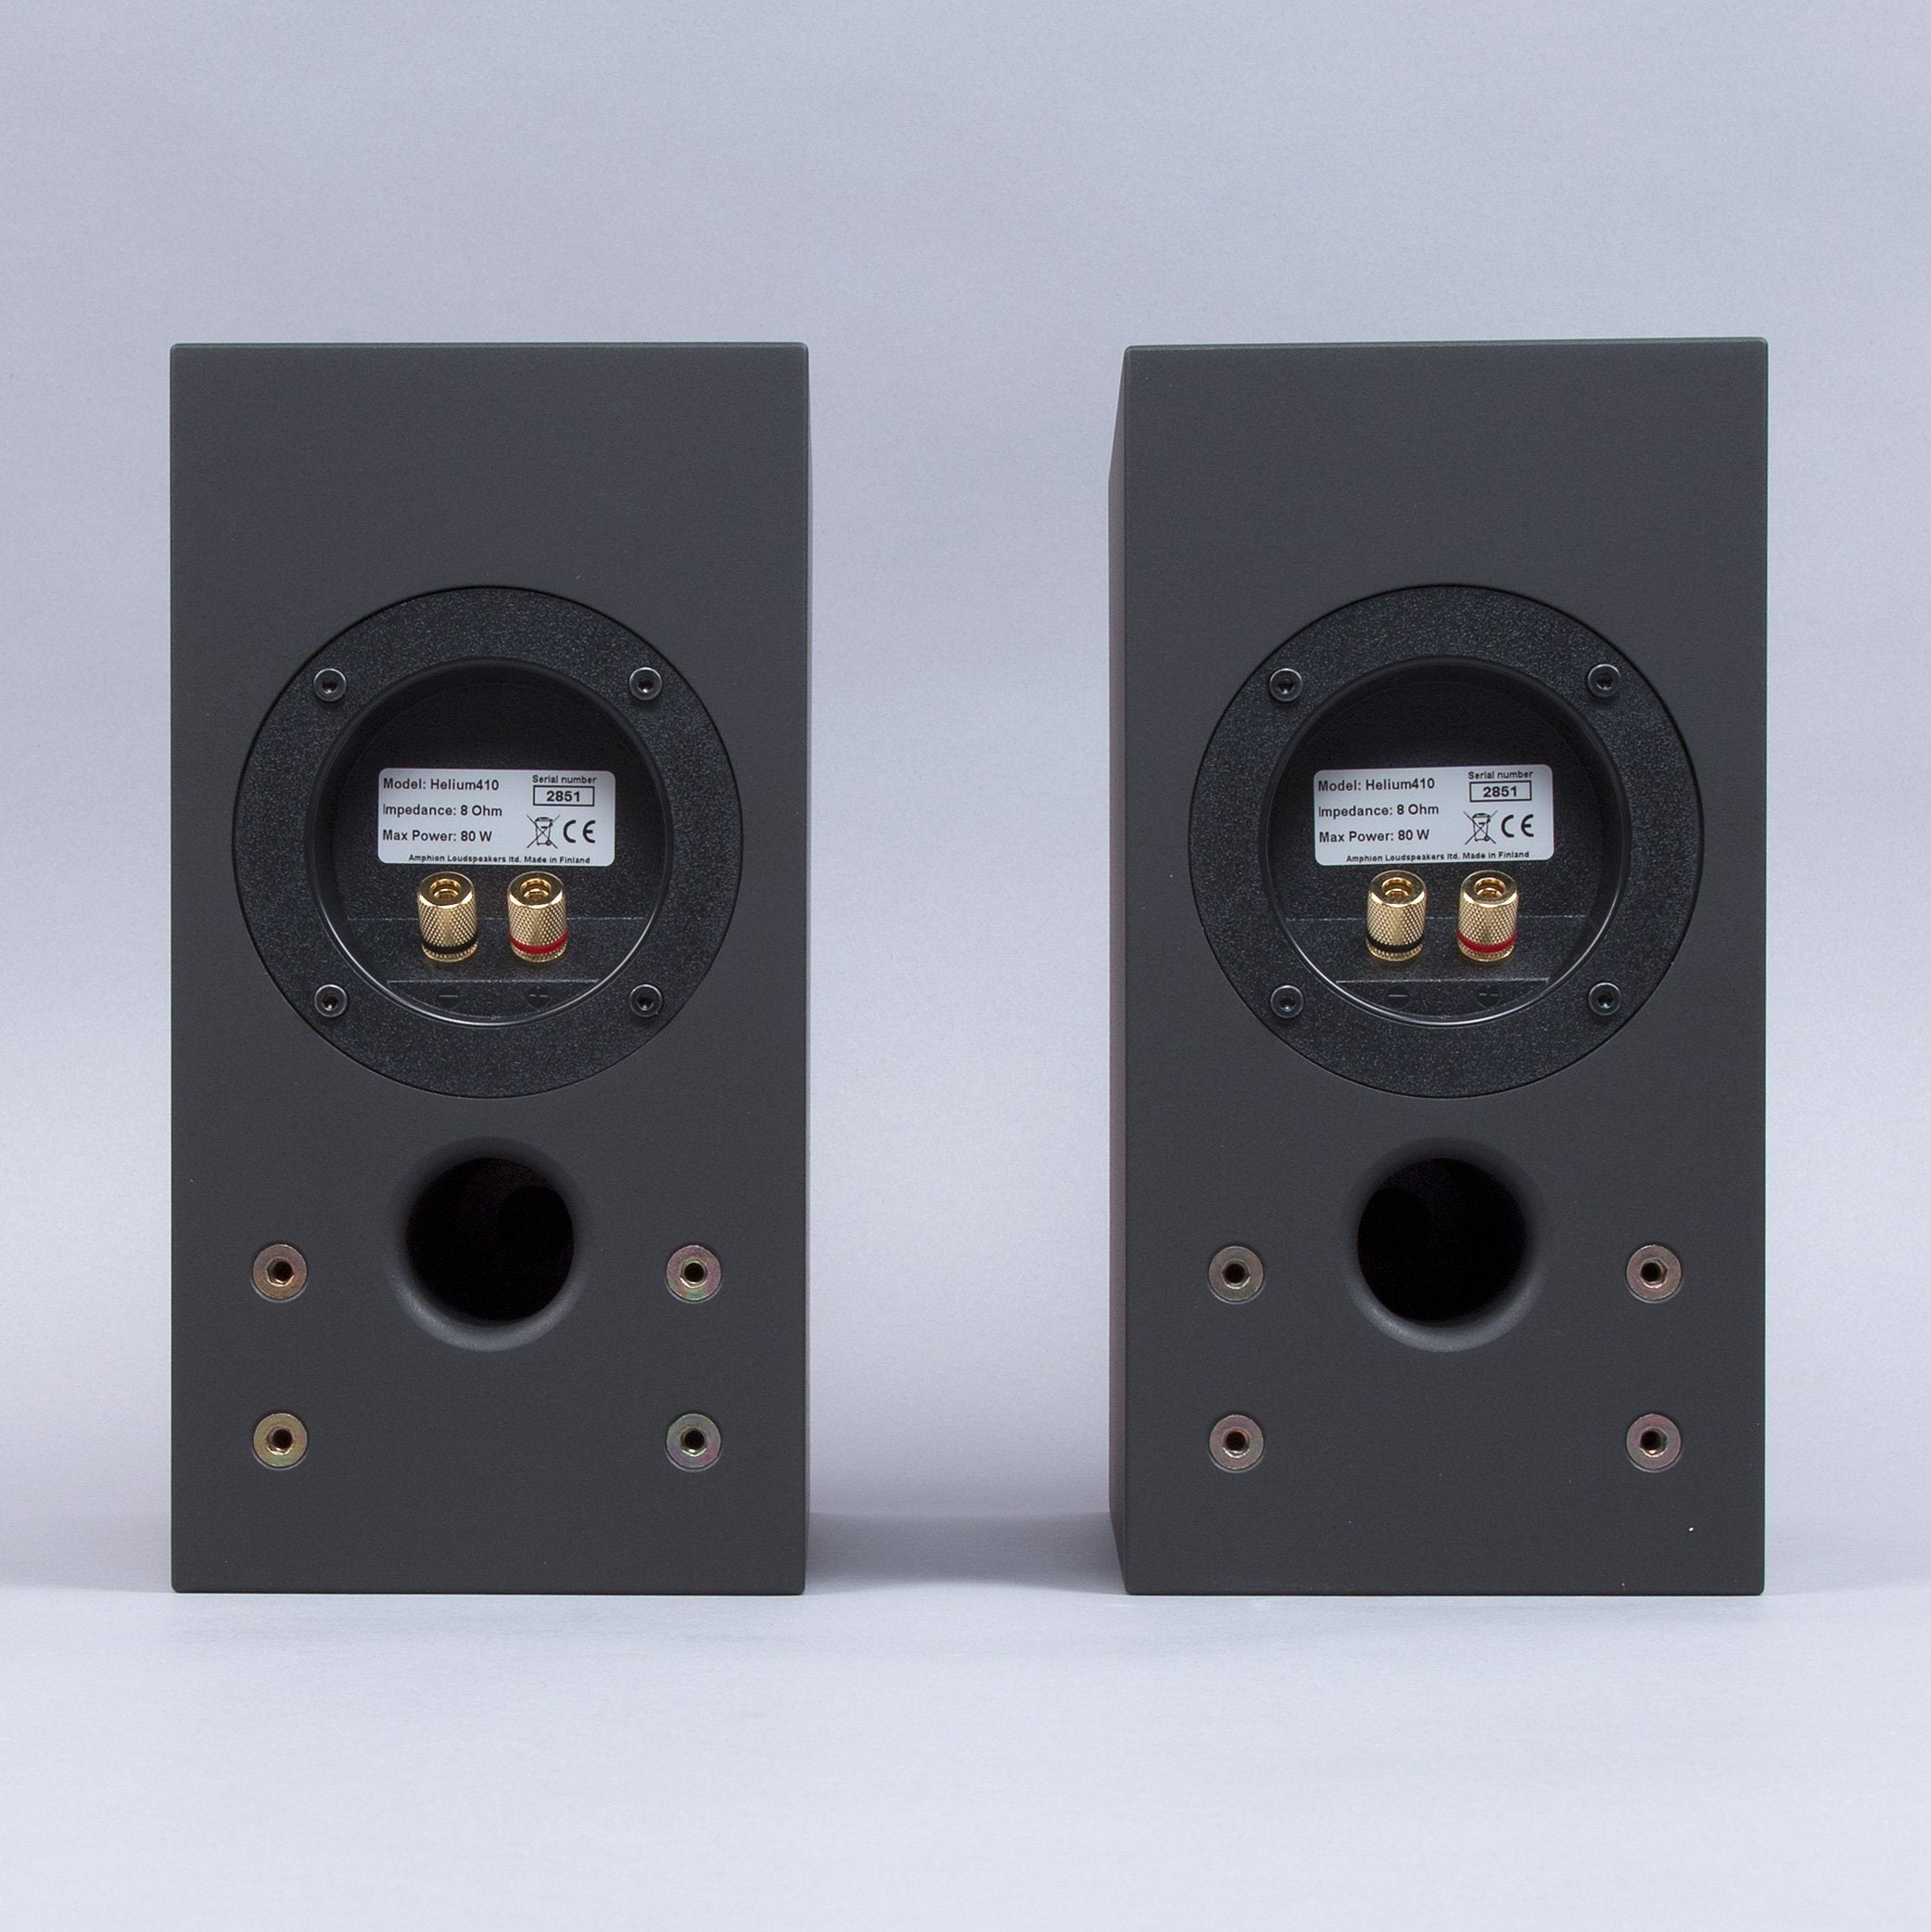 Amphion: Helium410 Loudspeaker - Black (Pair) - OPEN BOX SPECIAL